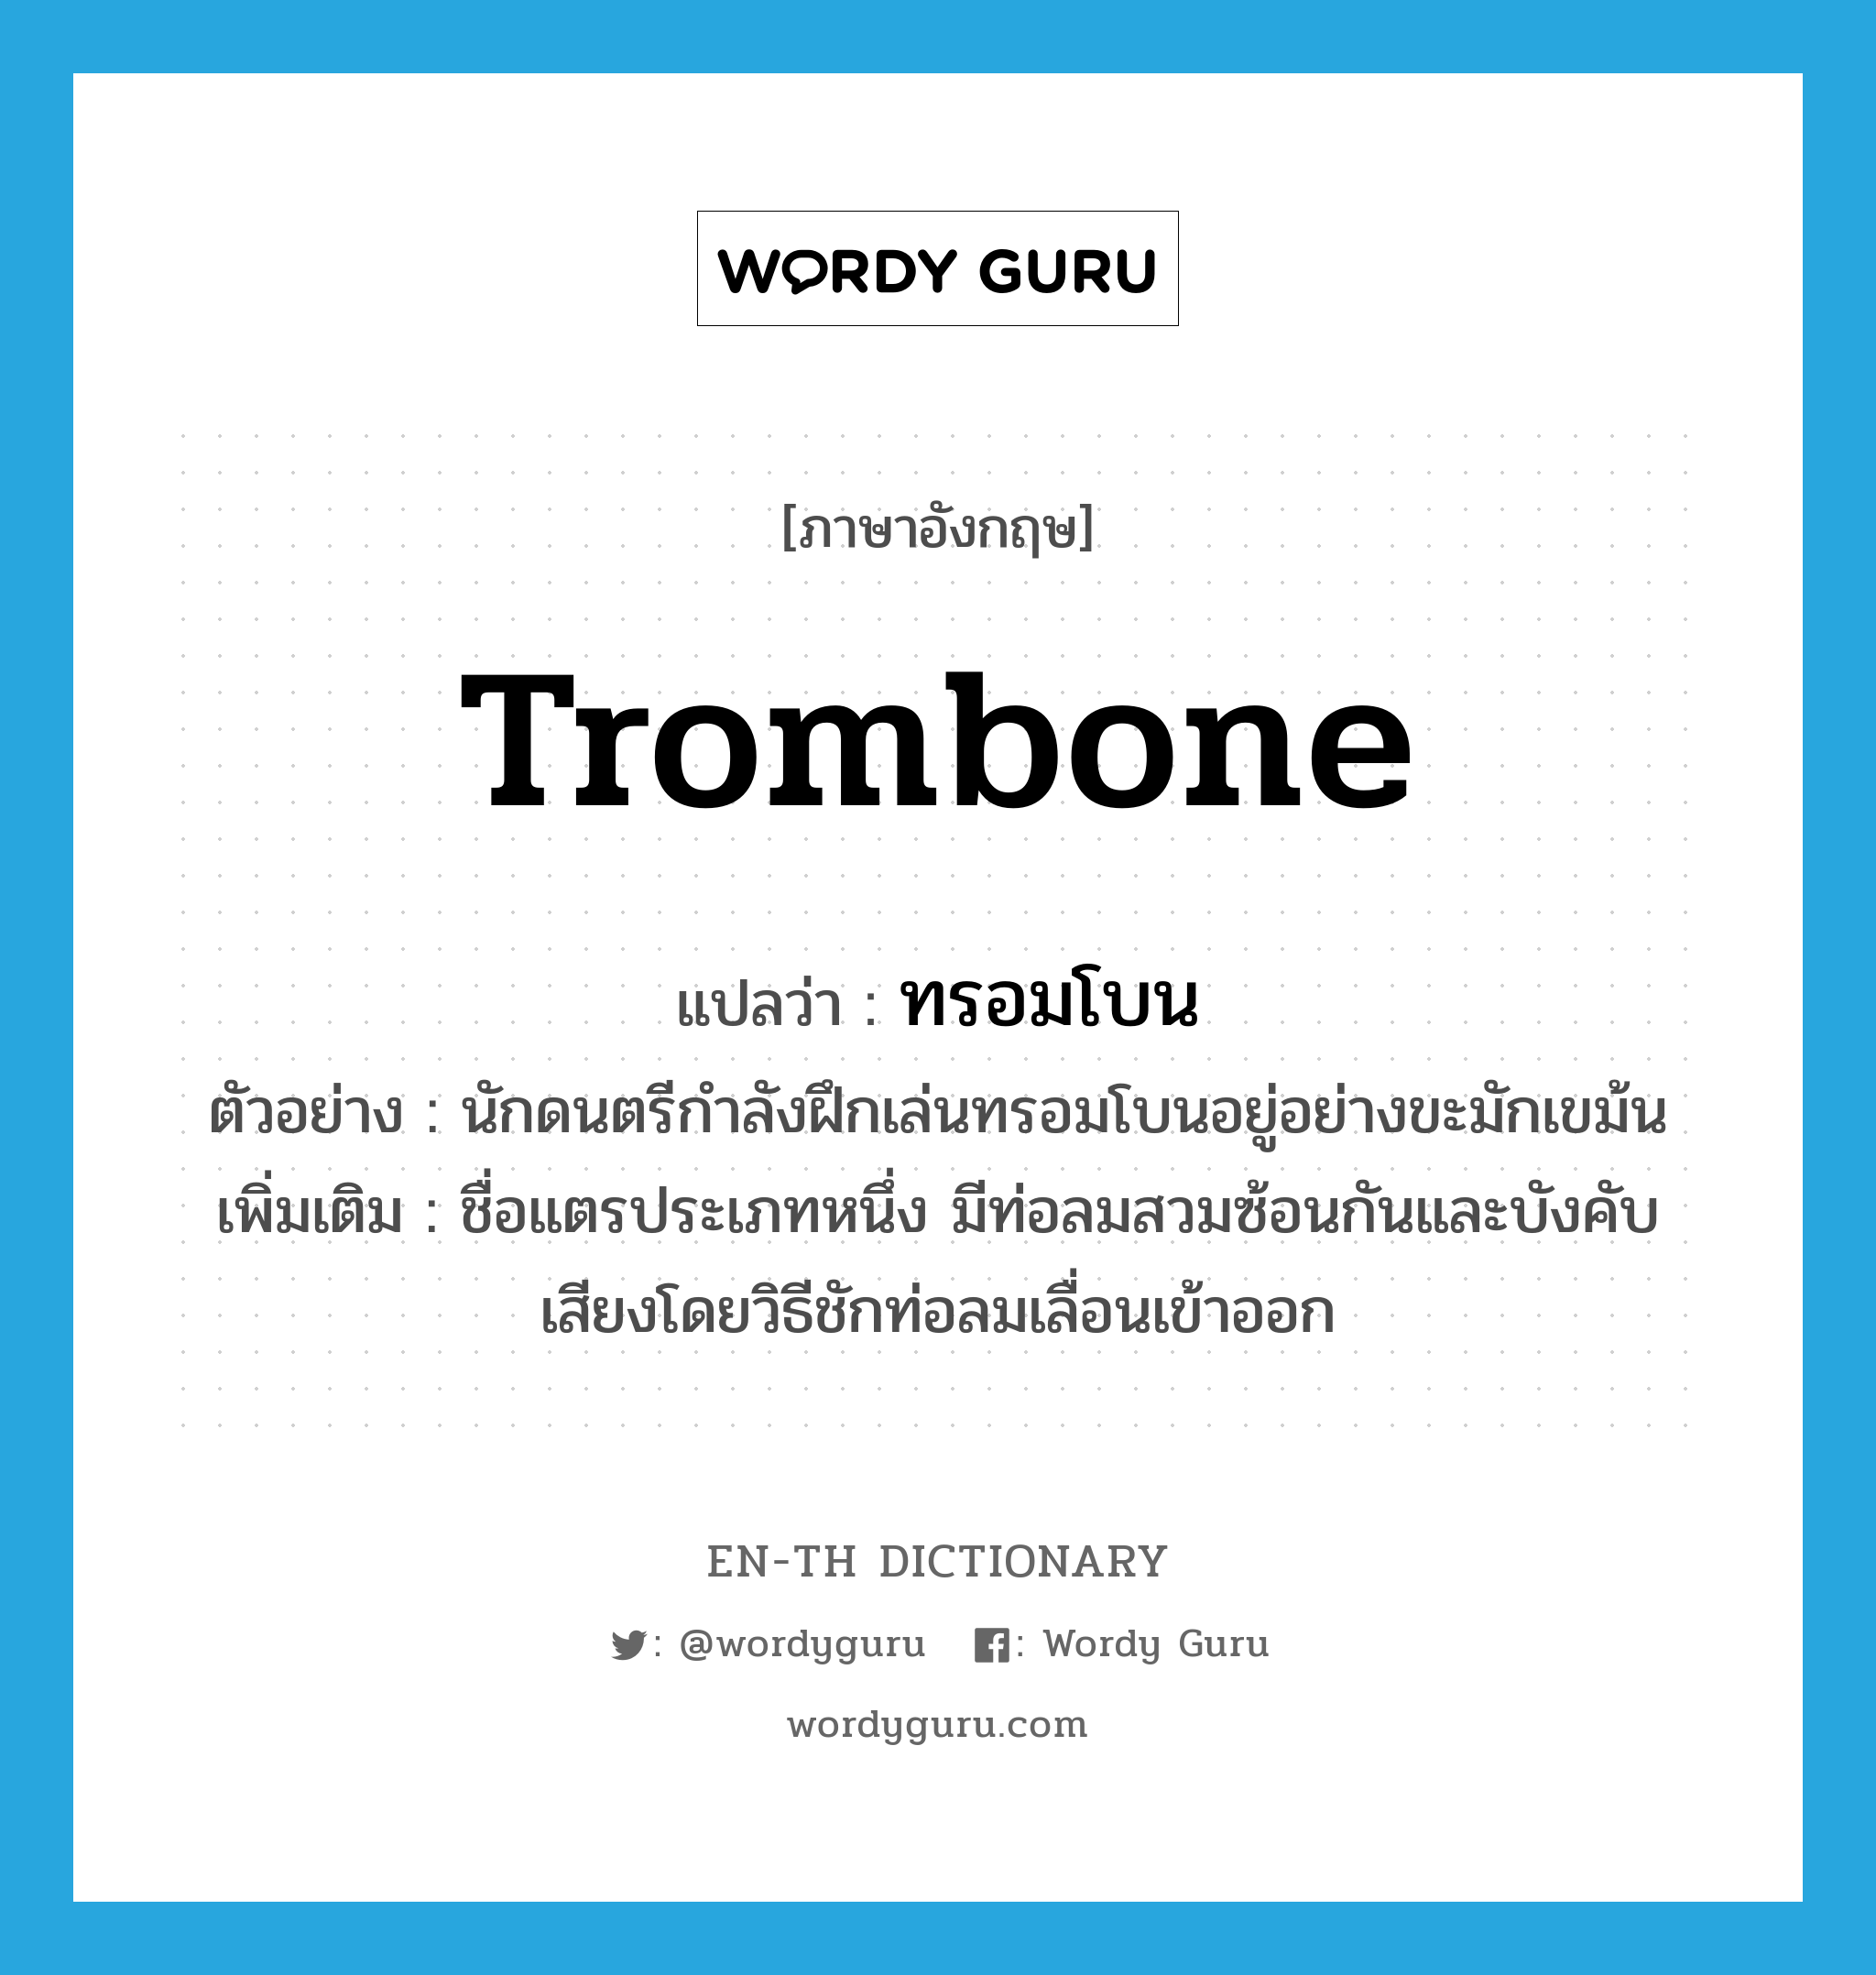 ทรอมโบน ภาษาอังกฤษ?, คำศัพท์ภาษาอังกฤษ ทรอมโบน แปลว่า trombone ประเภท N ตัวอย่าง นักดนตรีกำลังฝึกเล่นทรอมโบนอยู่อย่างขะมักเขม้น เพิ่มเติม ชื่อแตรประเภทหนึ่ง มีท่อลมสวมซ้อนกันและบังคับเสียงโดยวิธีชักท่อลมเลื่อนเข้าออก หมวด N